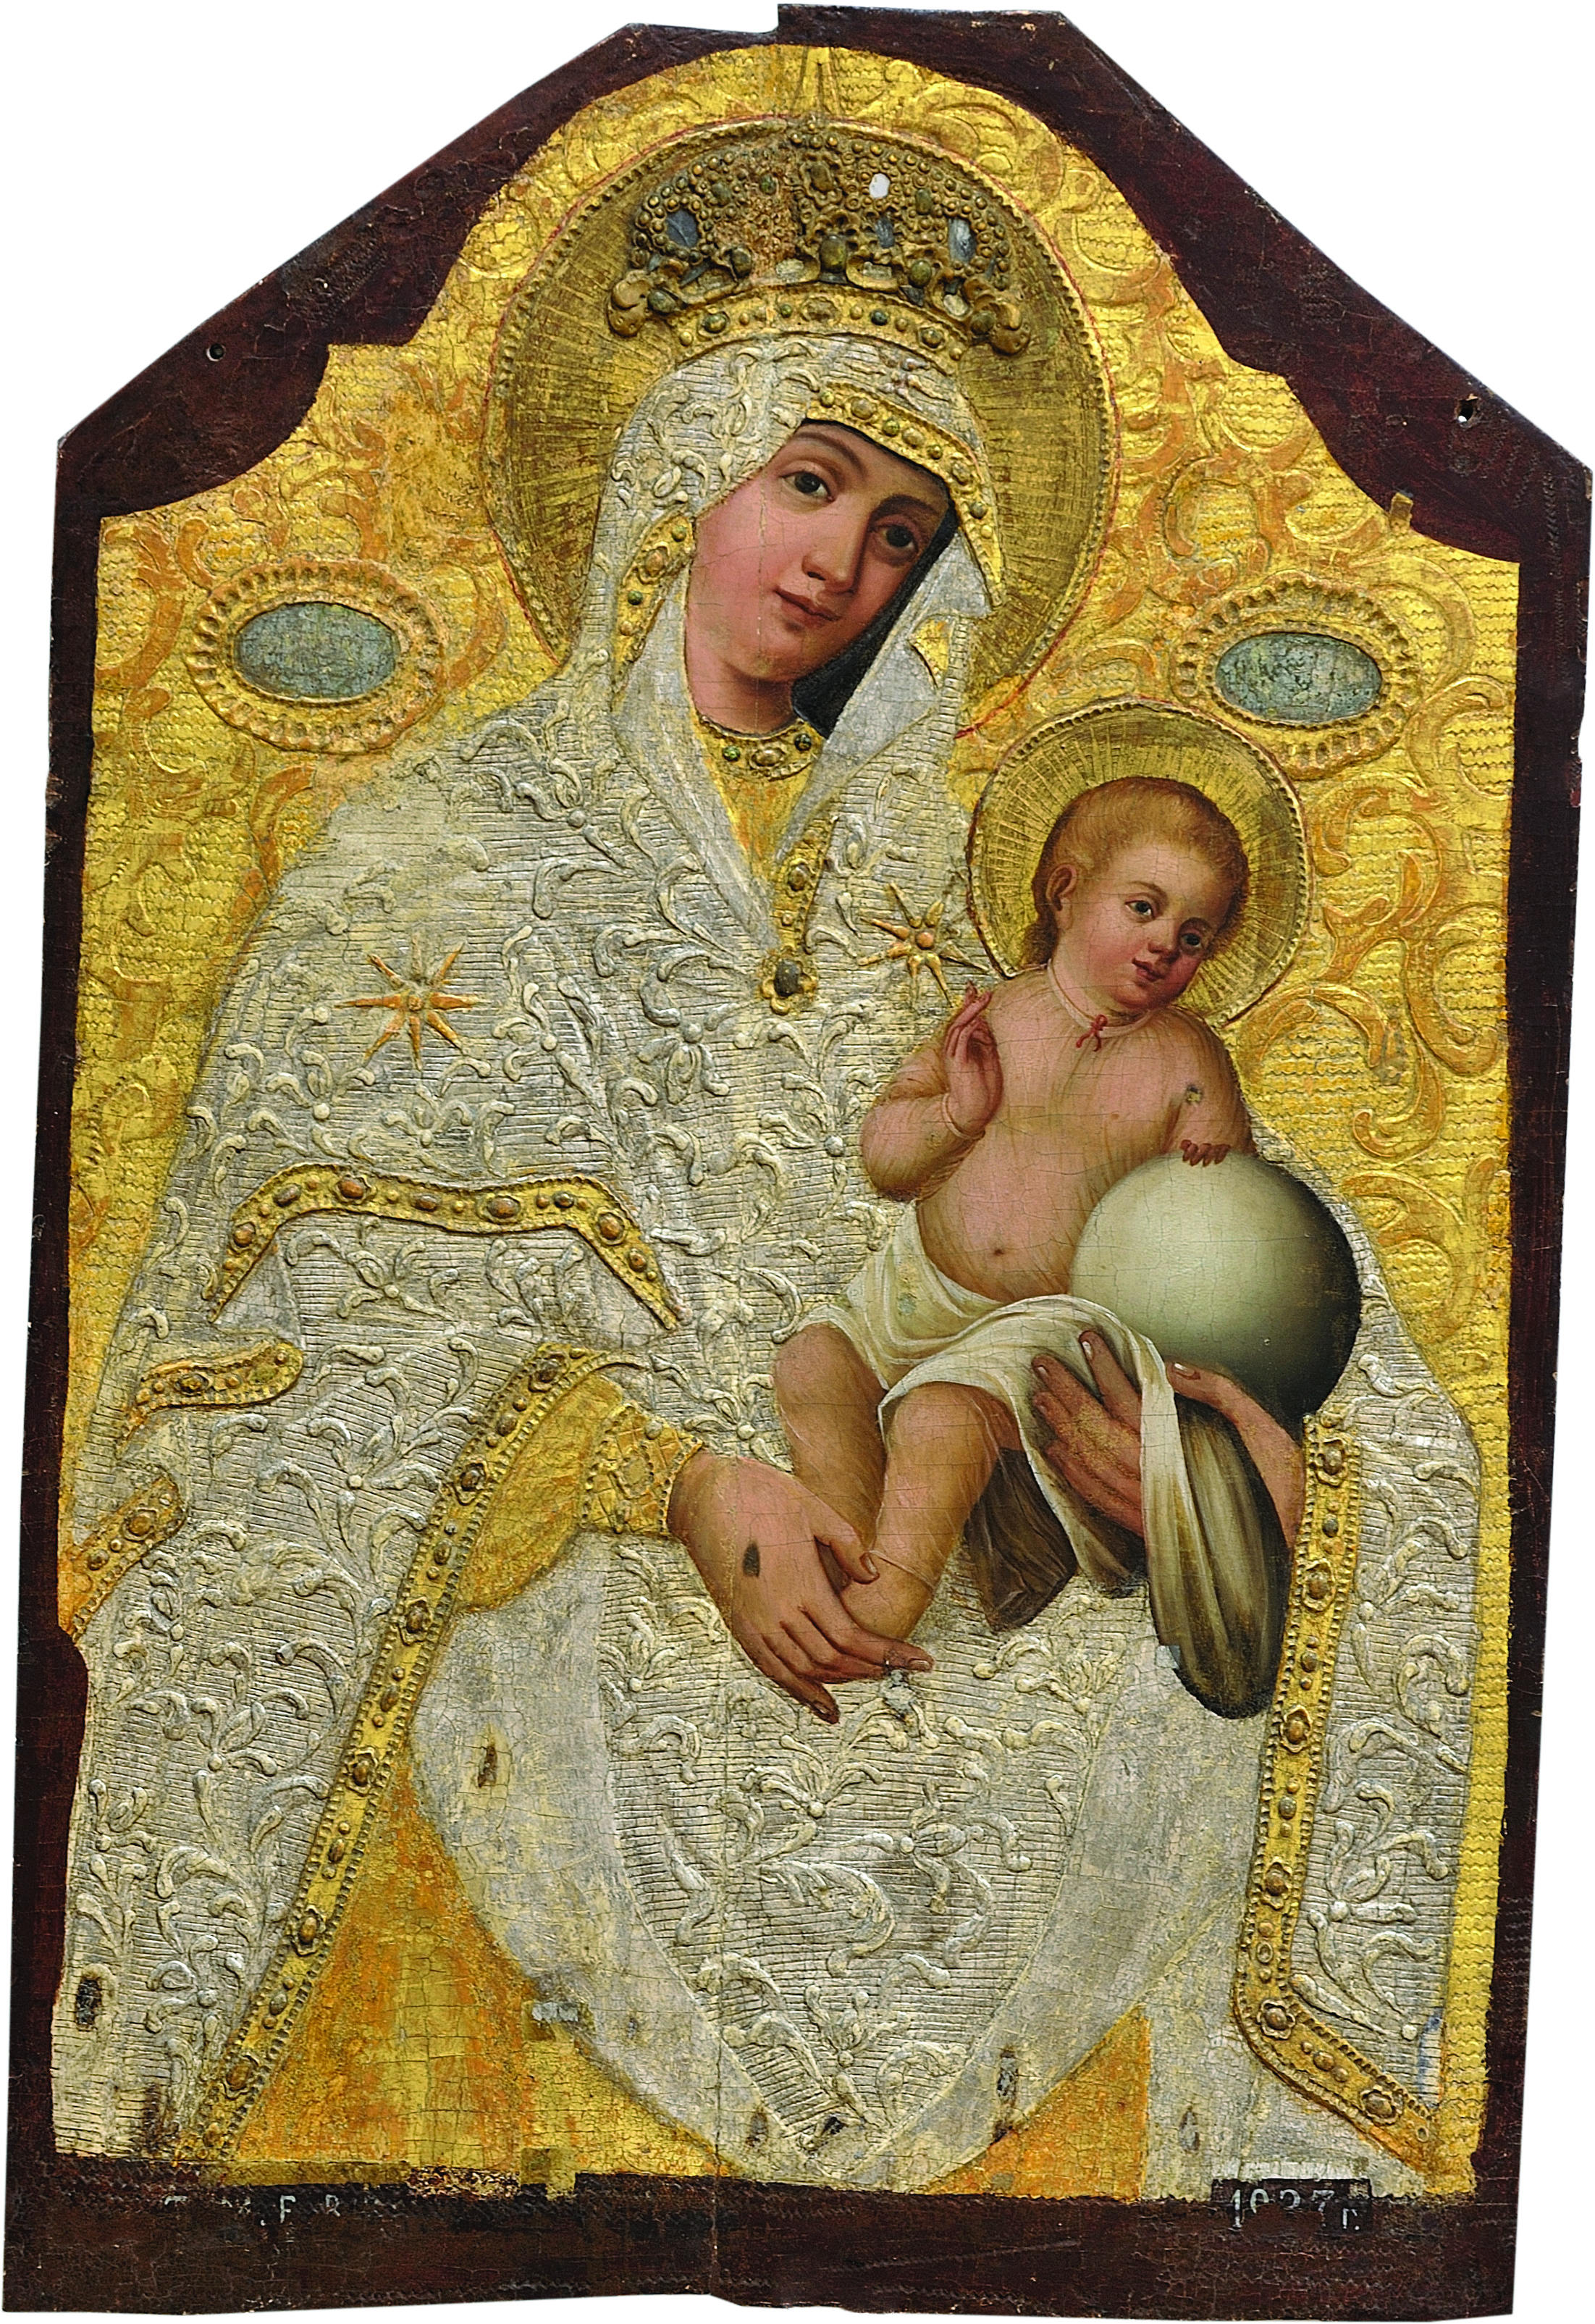 Zugrav Ioan Iavorschi, Maica Domnului cu Pruncul, 1827, temperă pe lemn, aurire, argintare, 99,5x66